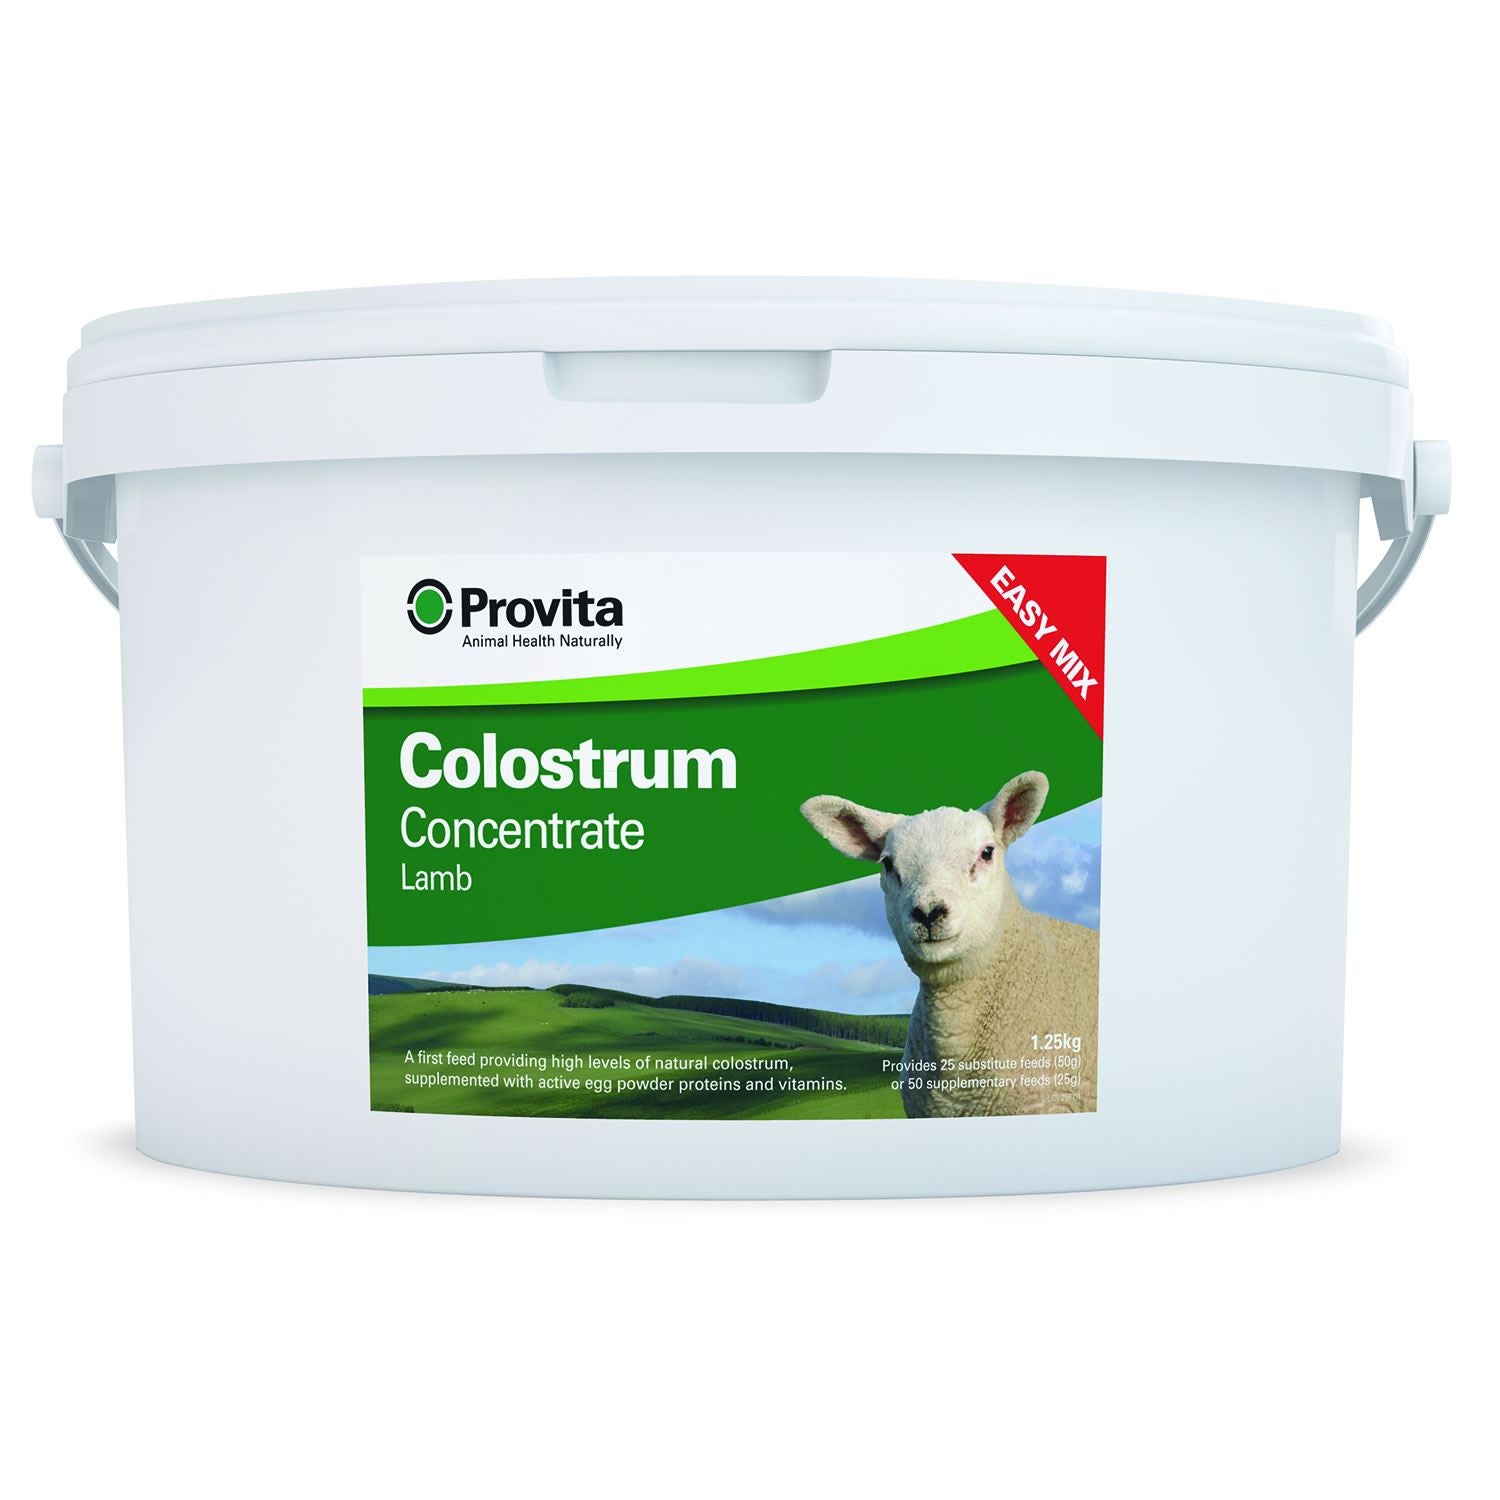 Provita Lamb Colostrum - Just Horse Riders